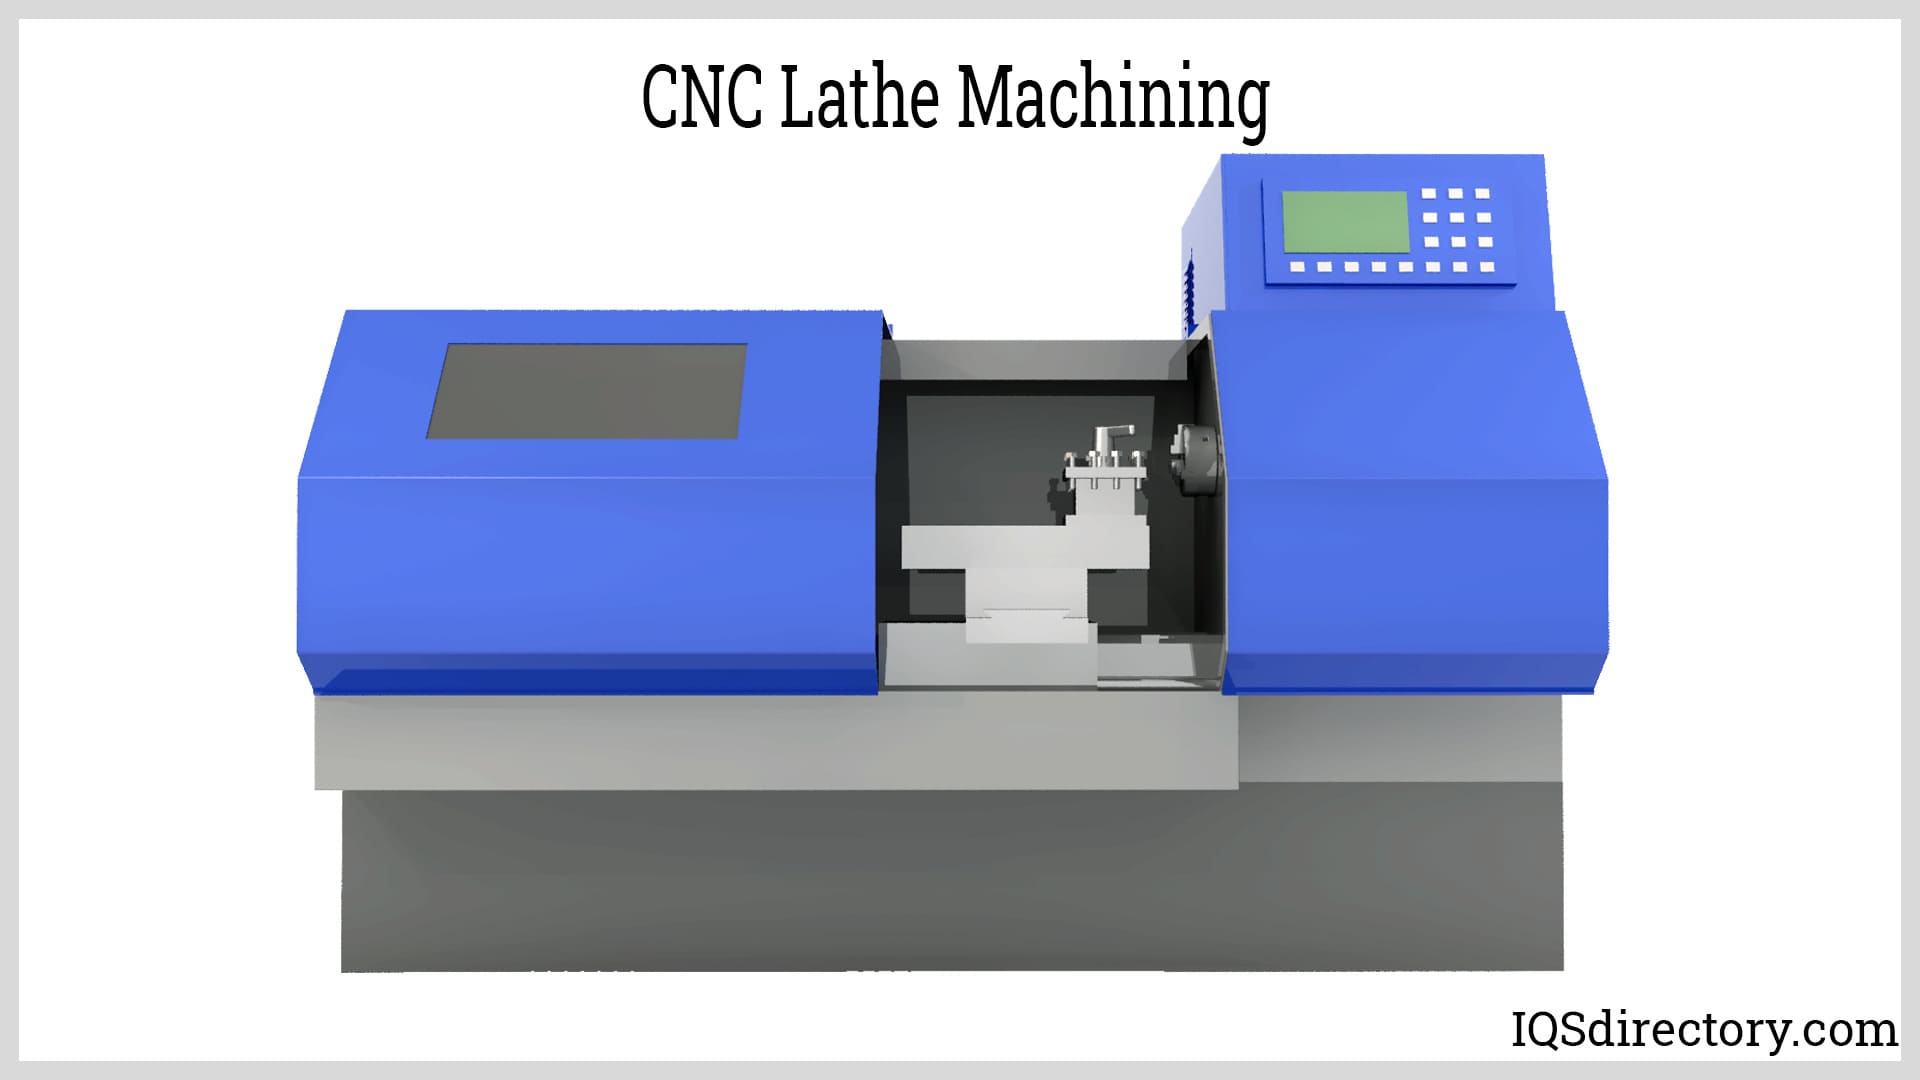 CNC Lathe Machining